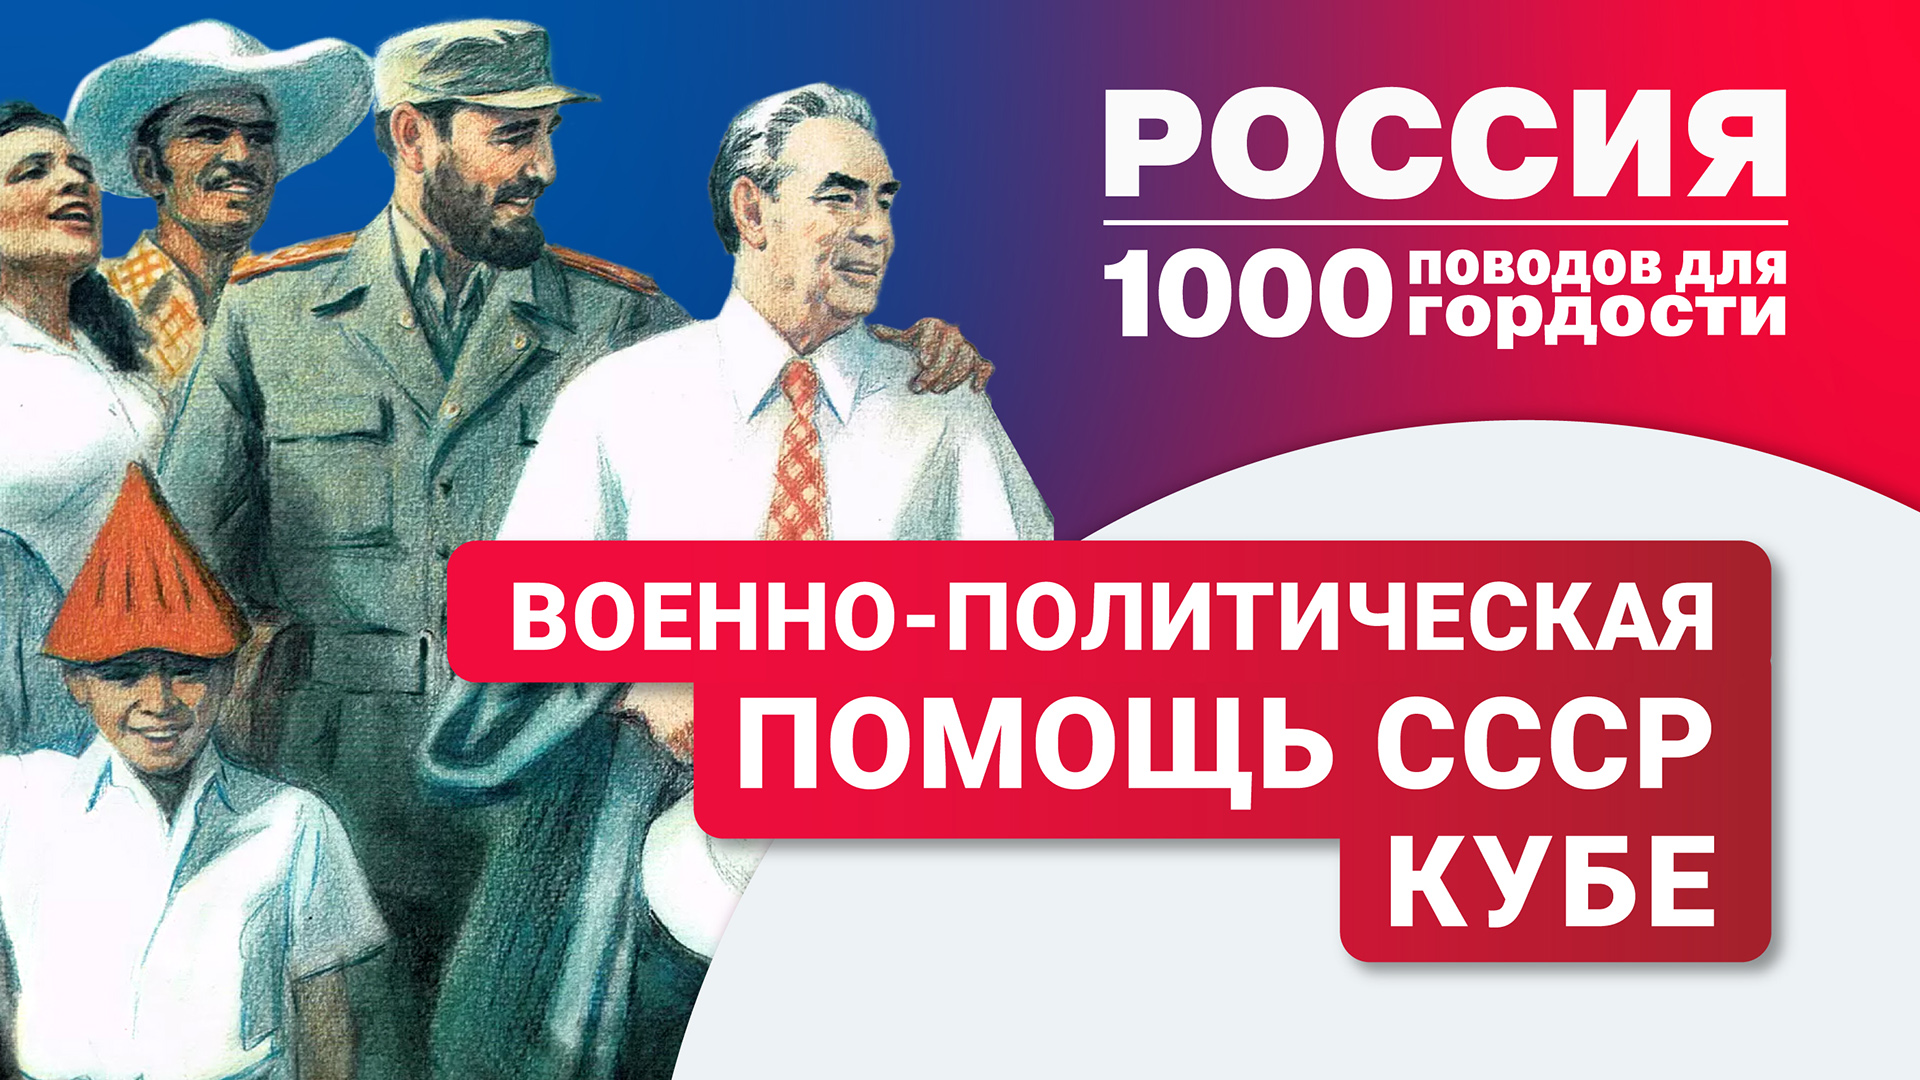 Военно-политическая помощь СССР Кубе